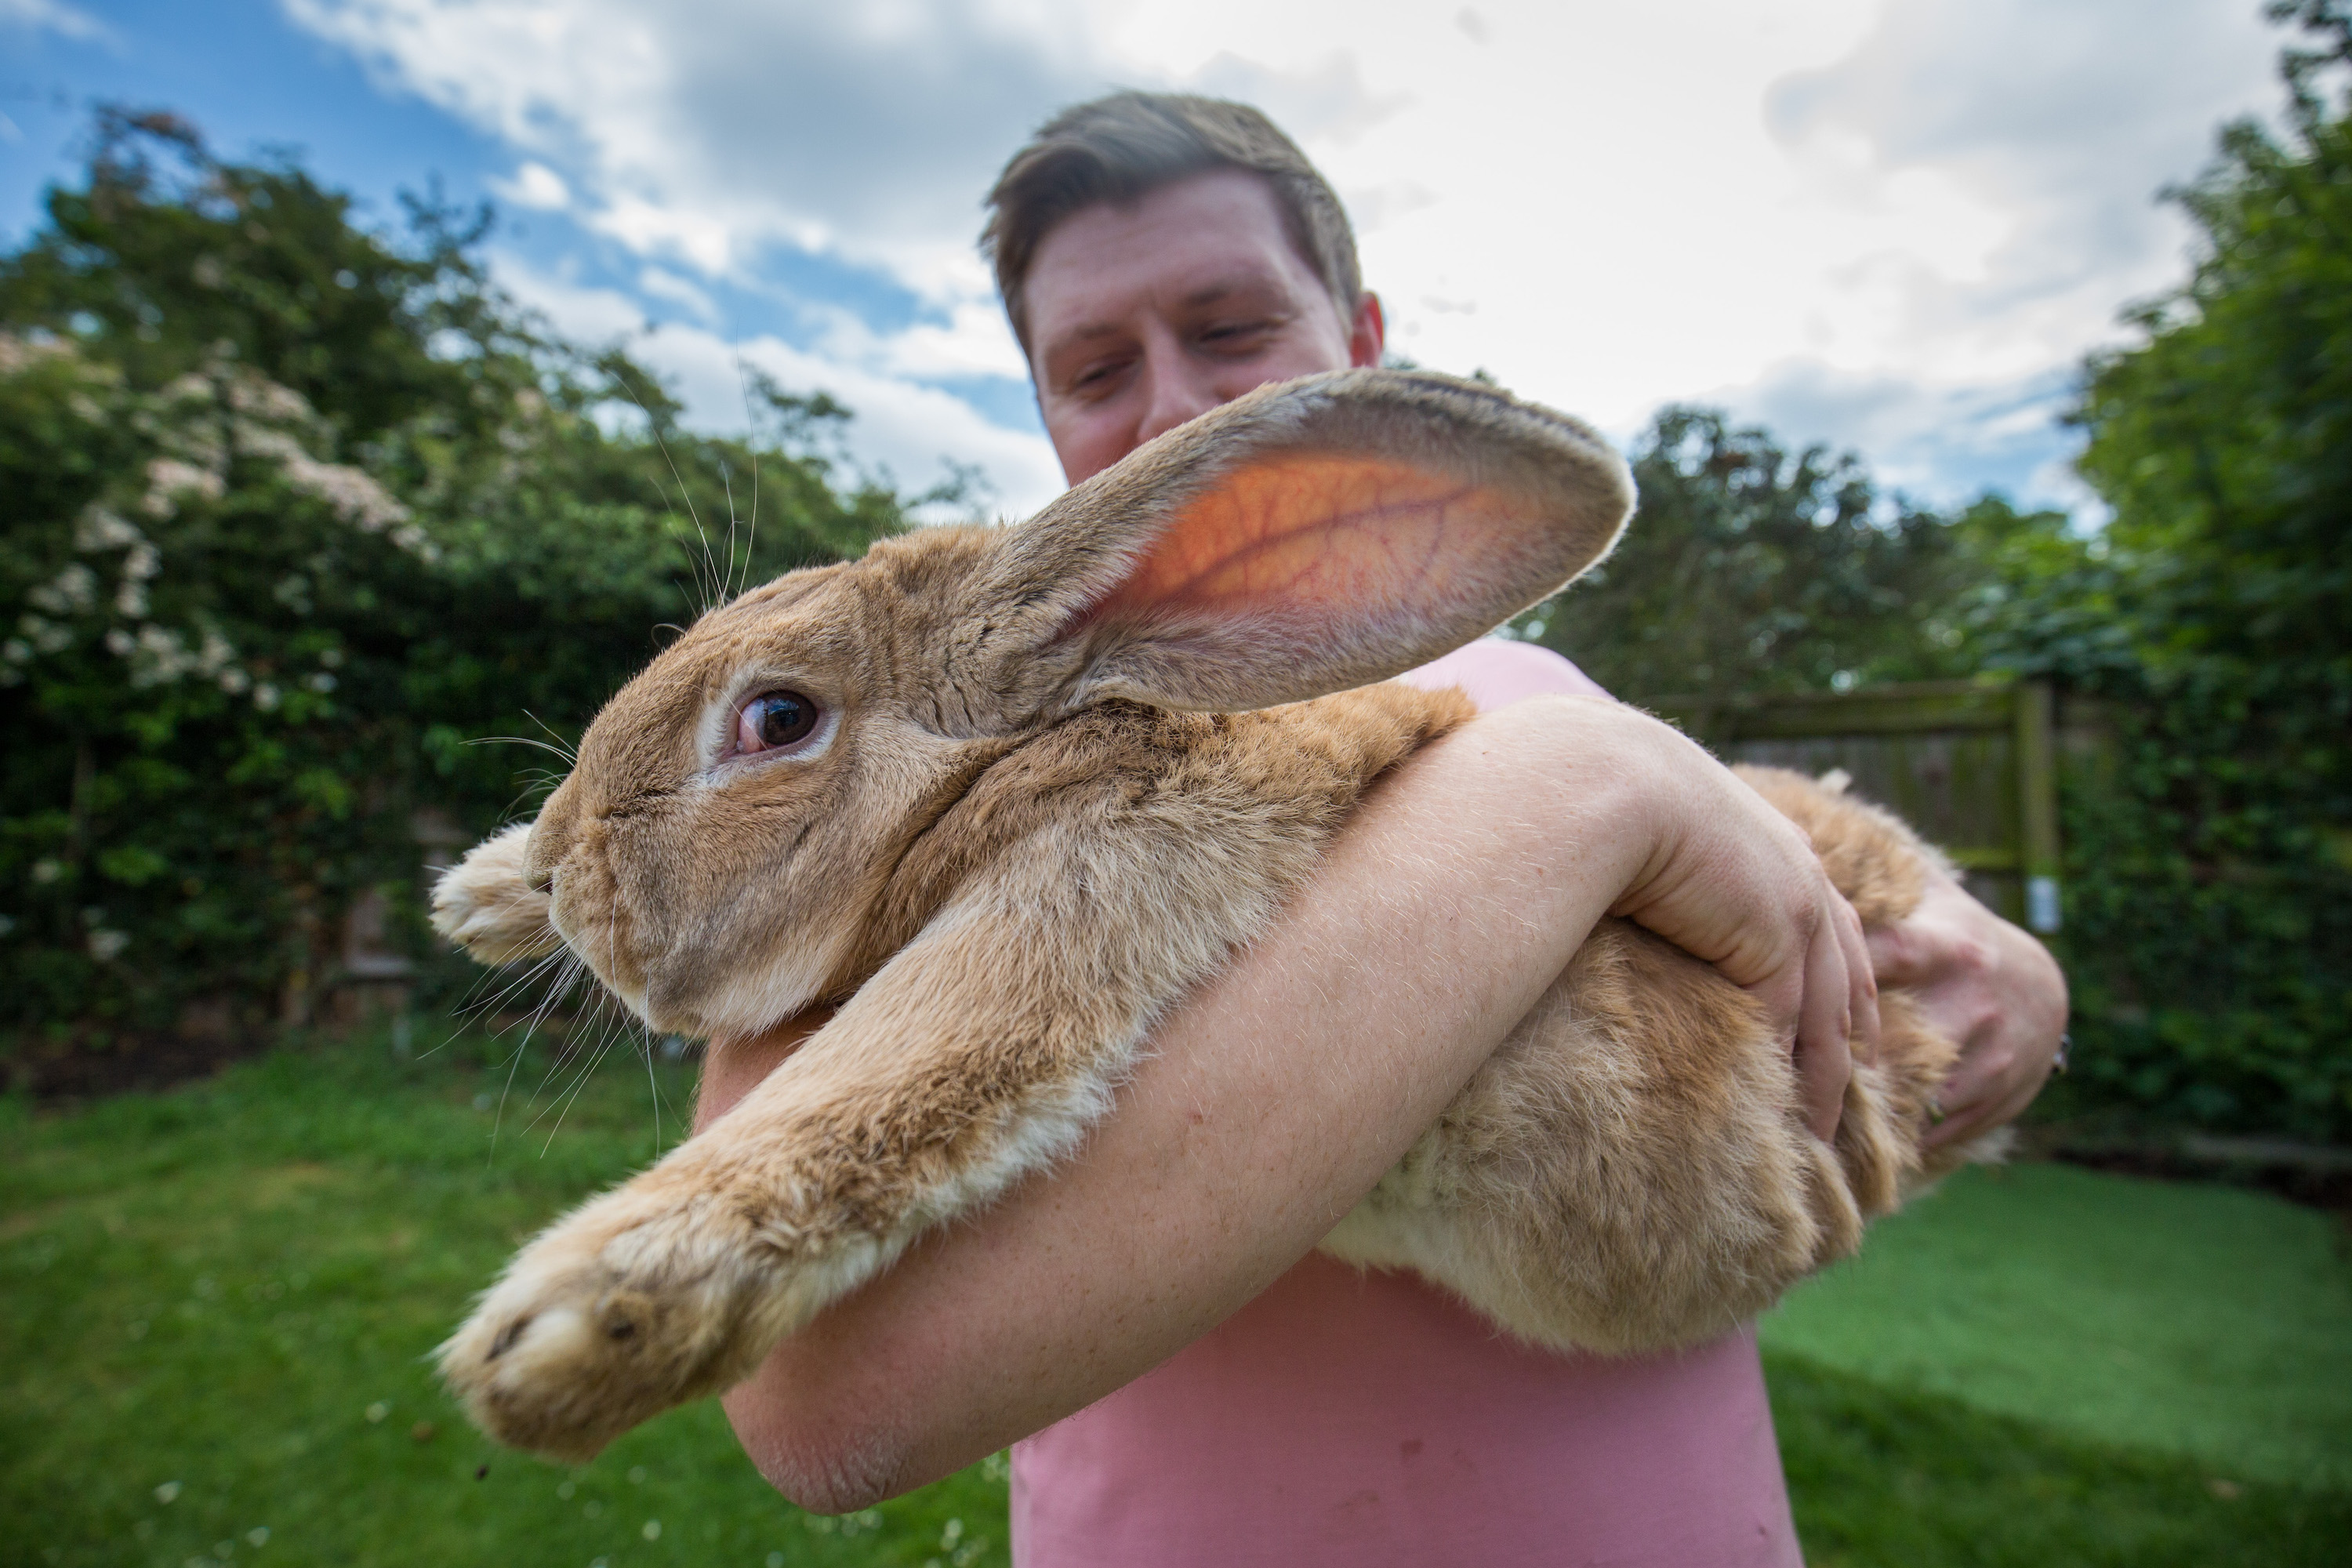 Dexter, das flämische Riesenkaninchen, ist der Sohn von Darius, dem derzeitigen Rekordhalter für das längste Kaninchen der Welt.  Darius wurde im April aus seinem Haus vermisst und gilt als gestohlen.